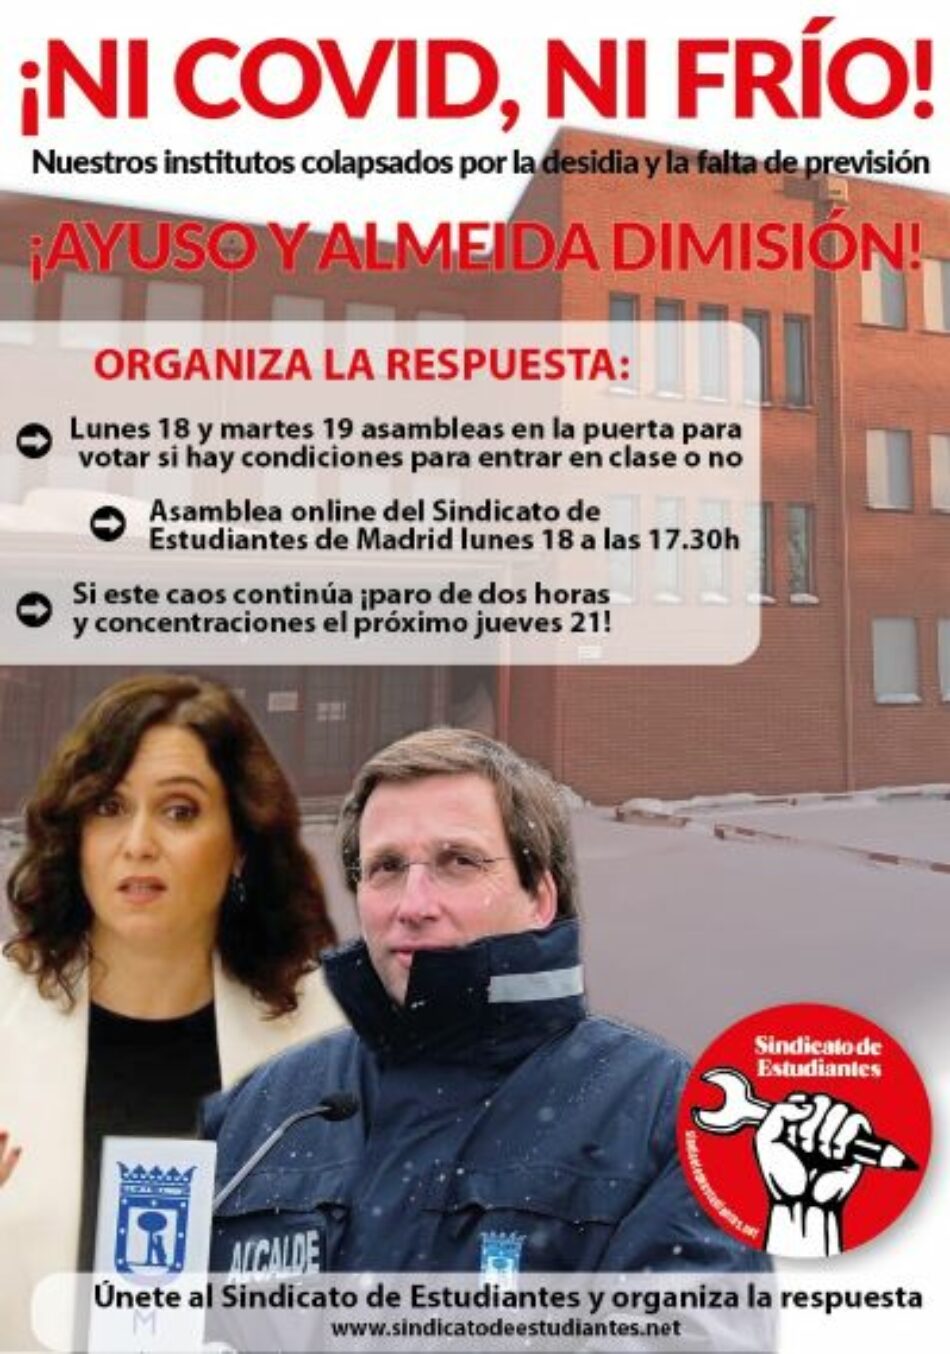 Madrid: institutos colapsados por la desidia y la falta de previsión. Lunes 18 y martes 19 asambleas en los centros para votar si hay condiciones para entrar en clase o no